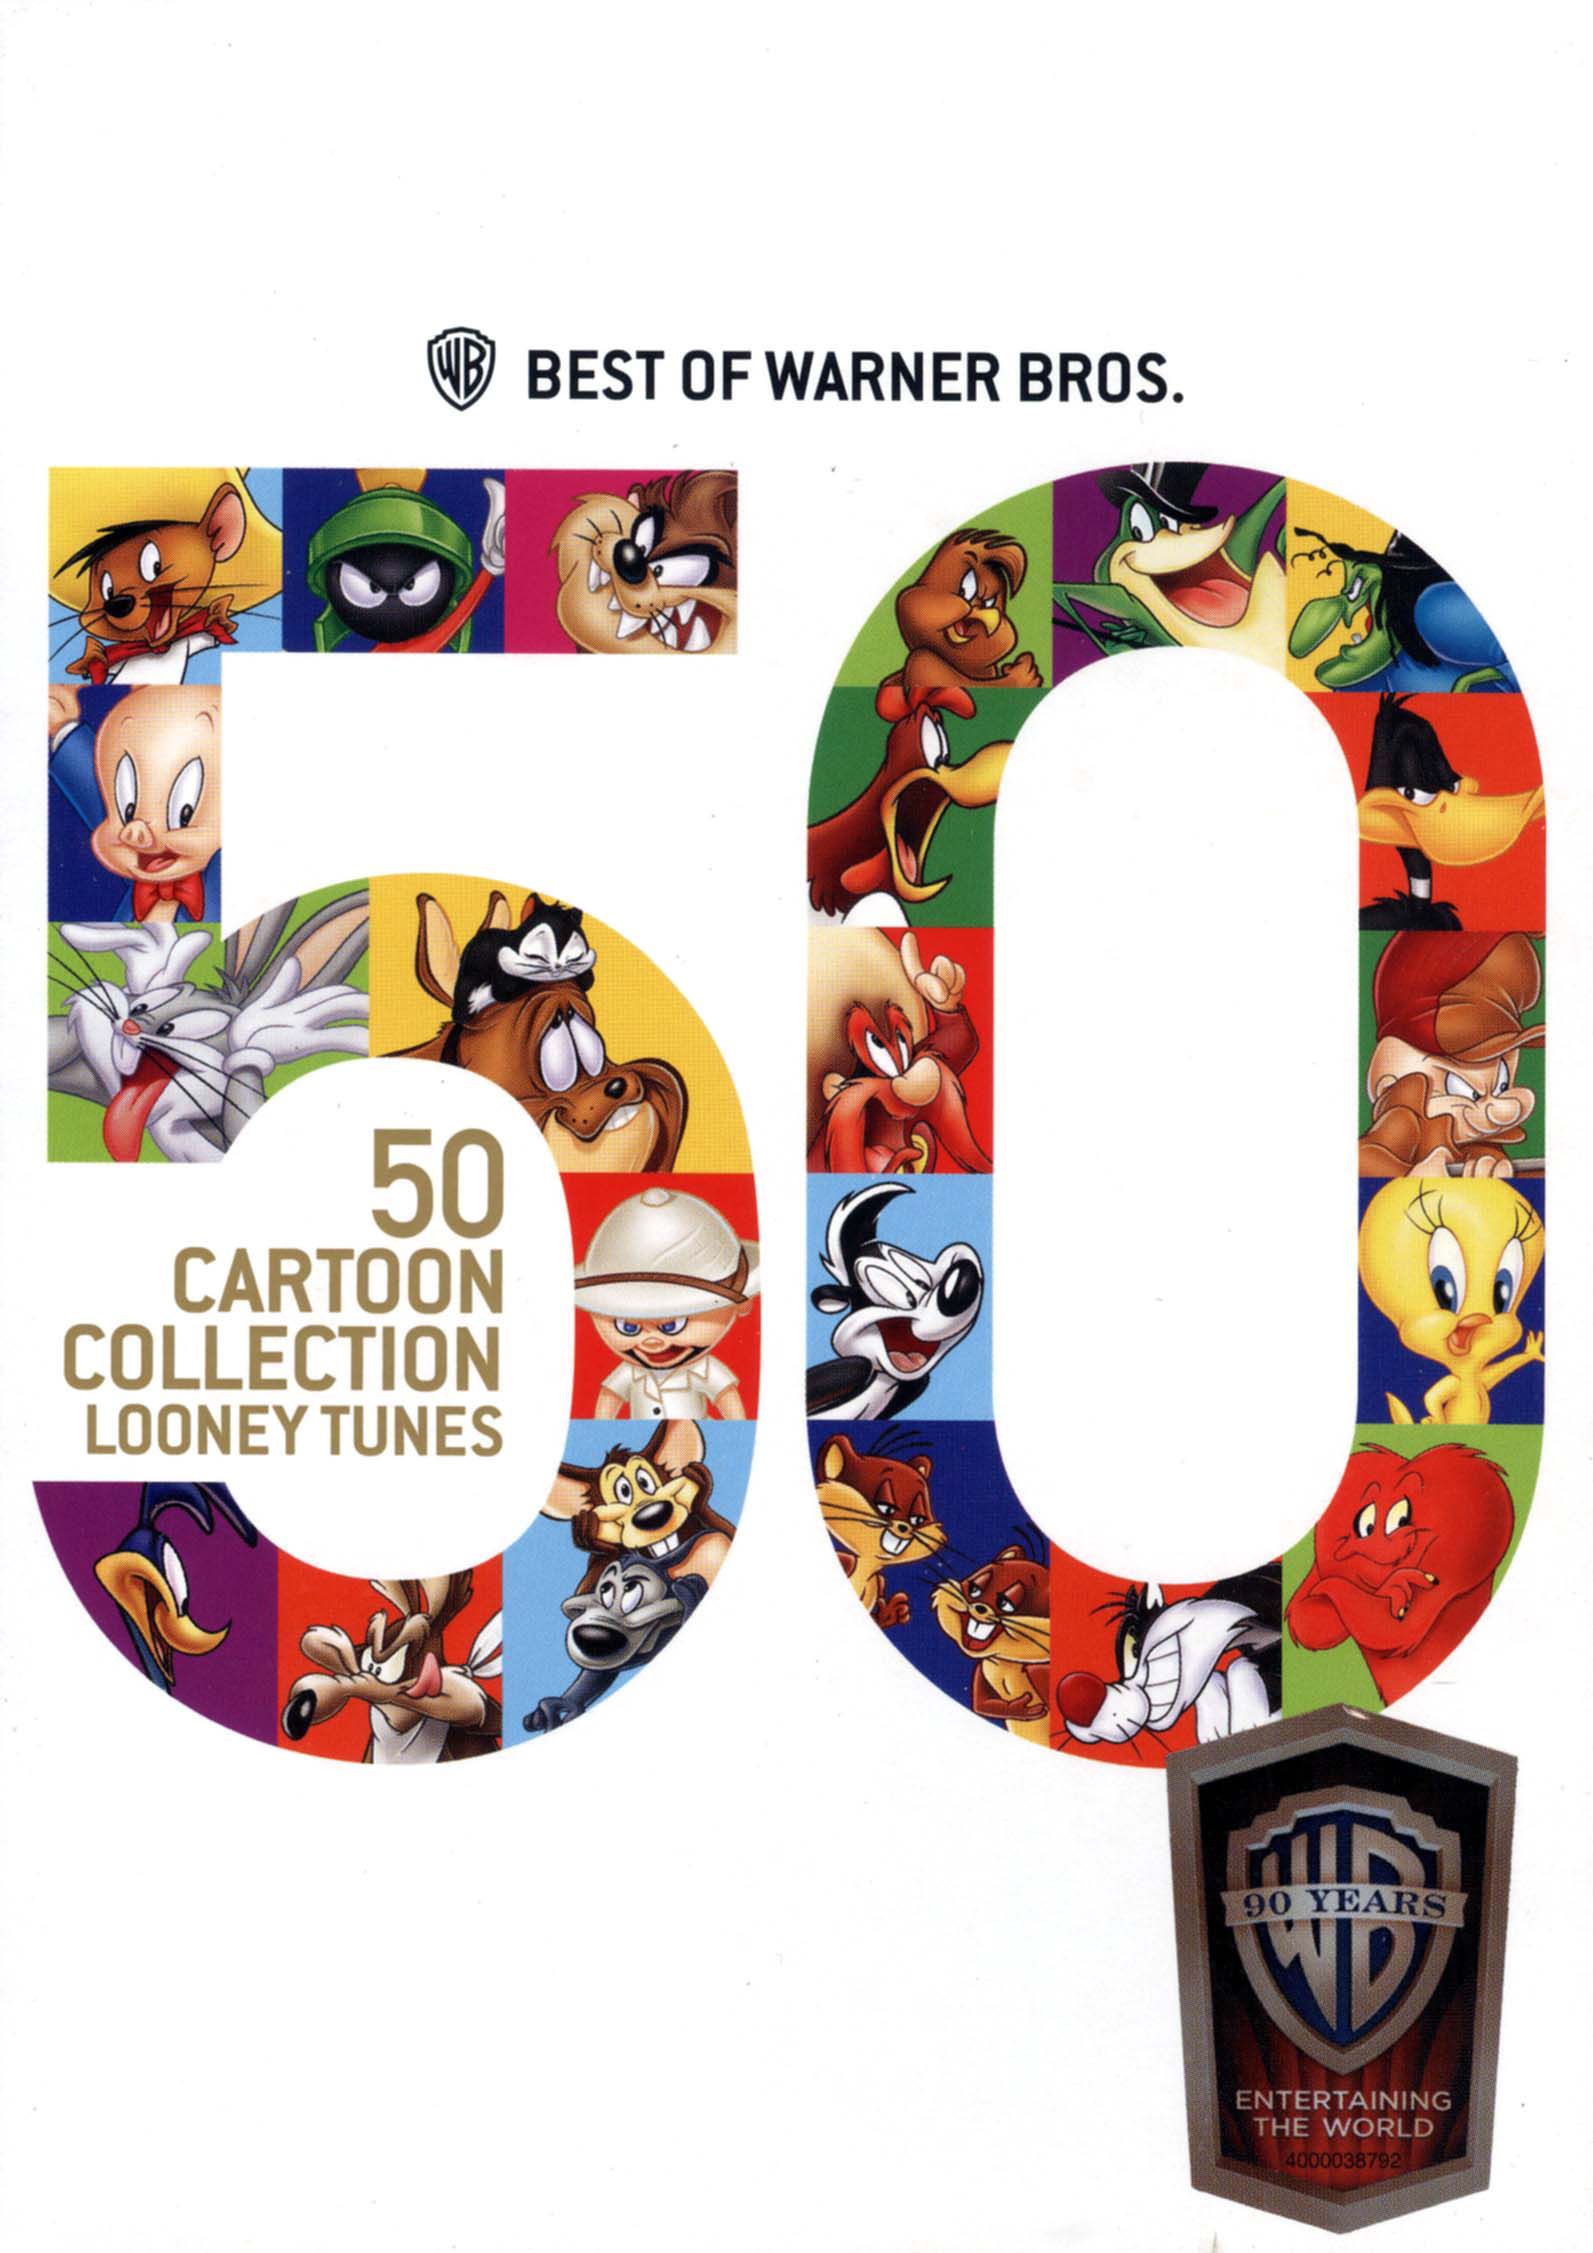 Best of Warner Bros.: 50 Cartoon Collection Looney Tunes [2 Discs] [DVD] -  Best Buy